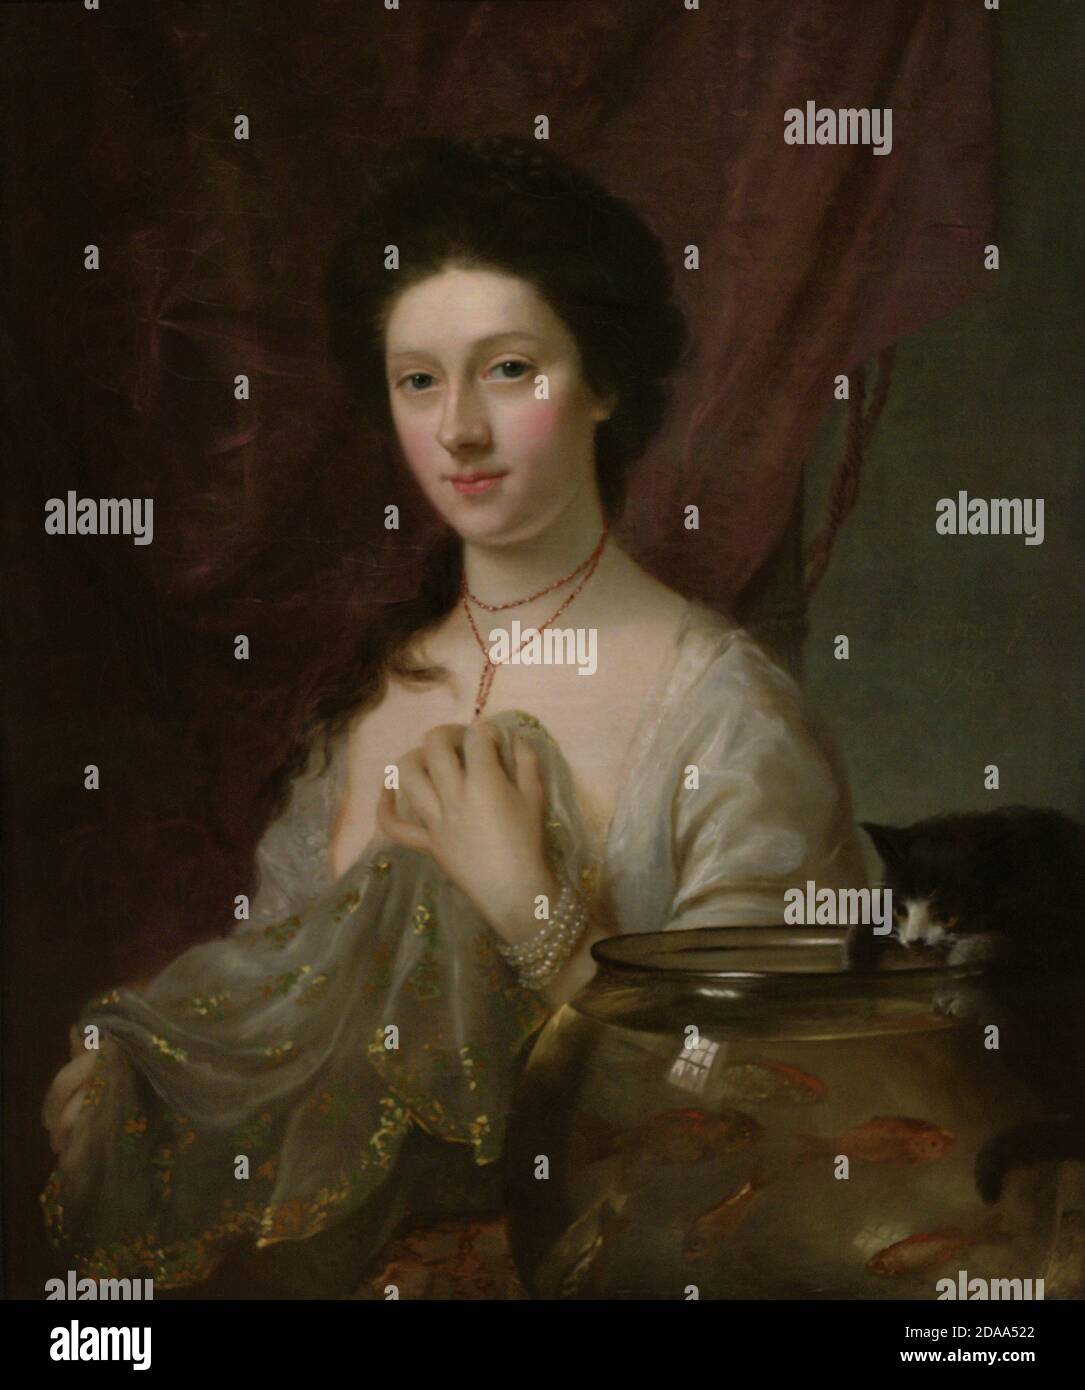 Catherine Maria Fisher (c. 1741-1767), bekannt als Kitty Fisher. Britische Kurtisane. Porträt von Nathaniel Hone (1718-1784). Öl auf Leinwand (74,9 x 62,2 cm), 1765. National Portrait Gallery. London, England, Vereinigtes Königreich. Stockfoto